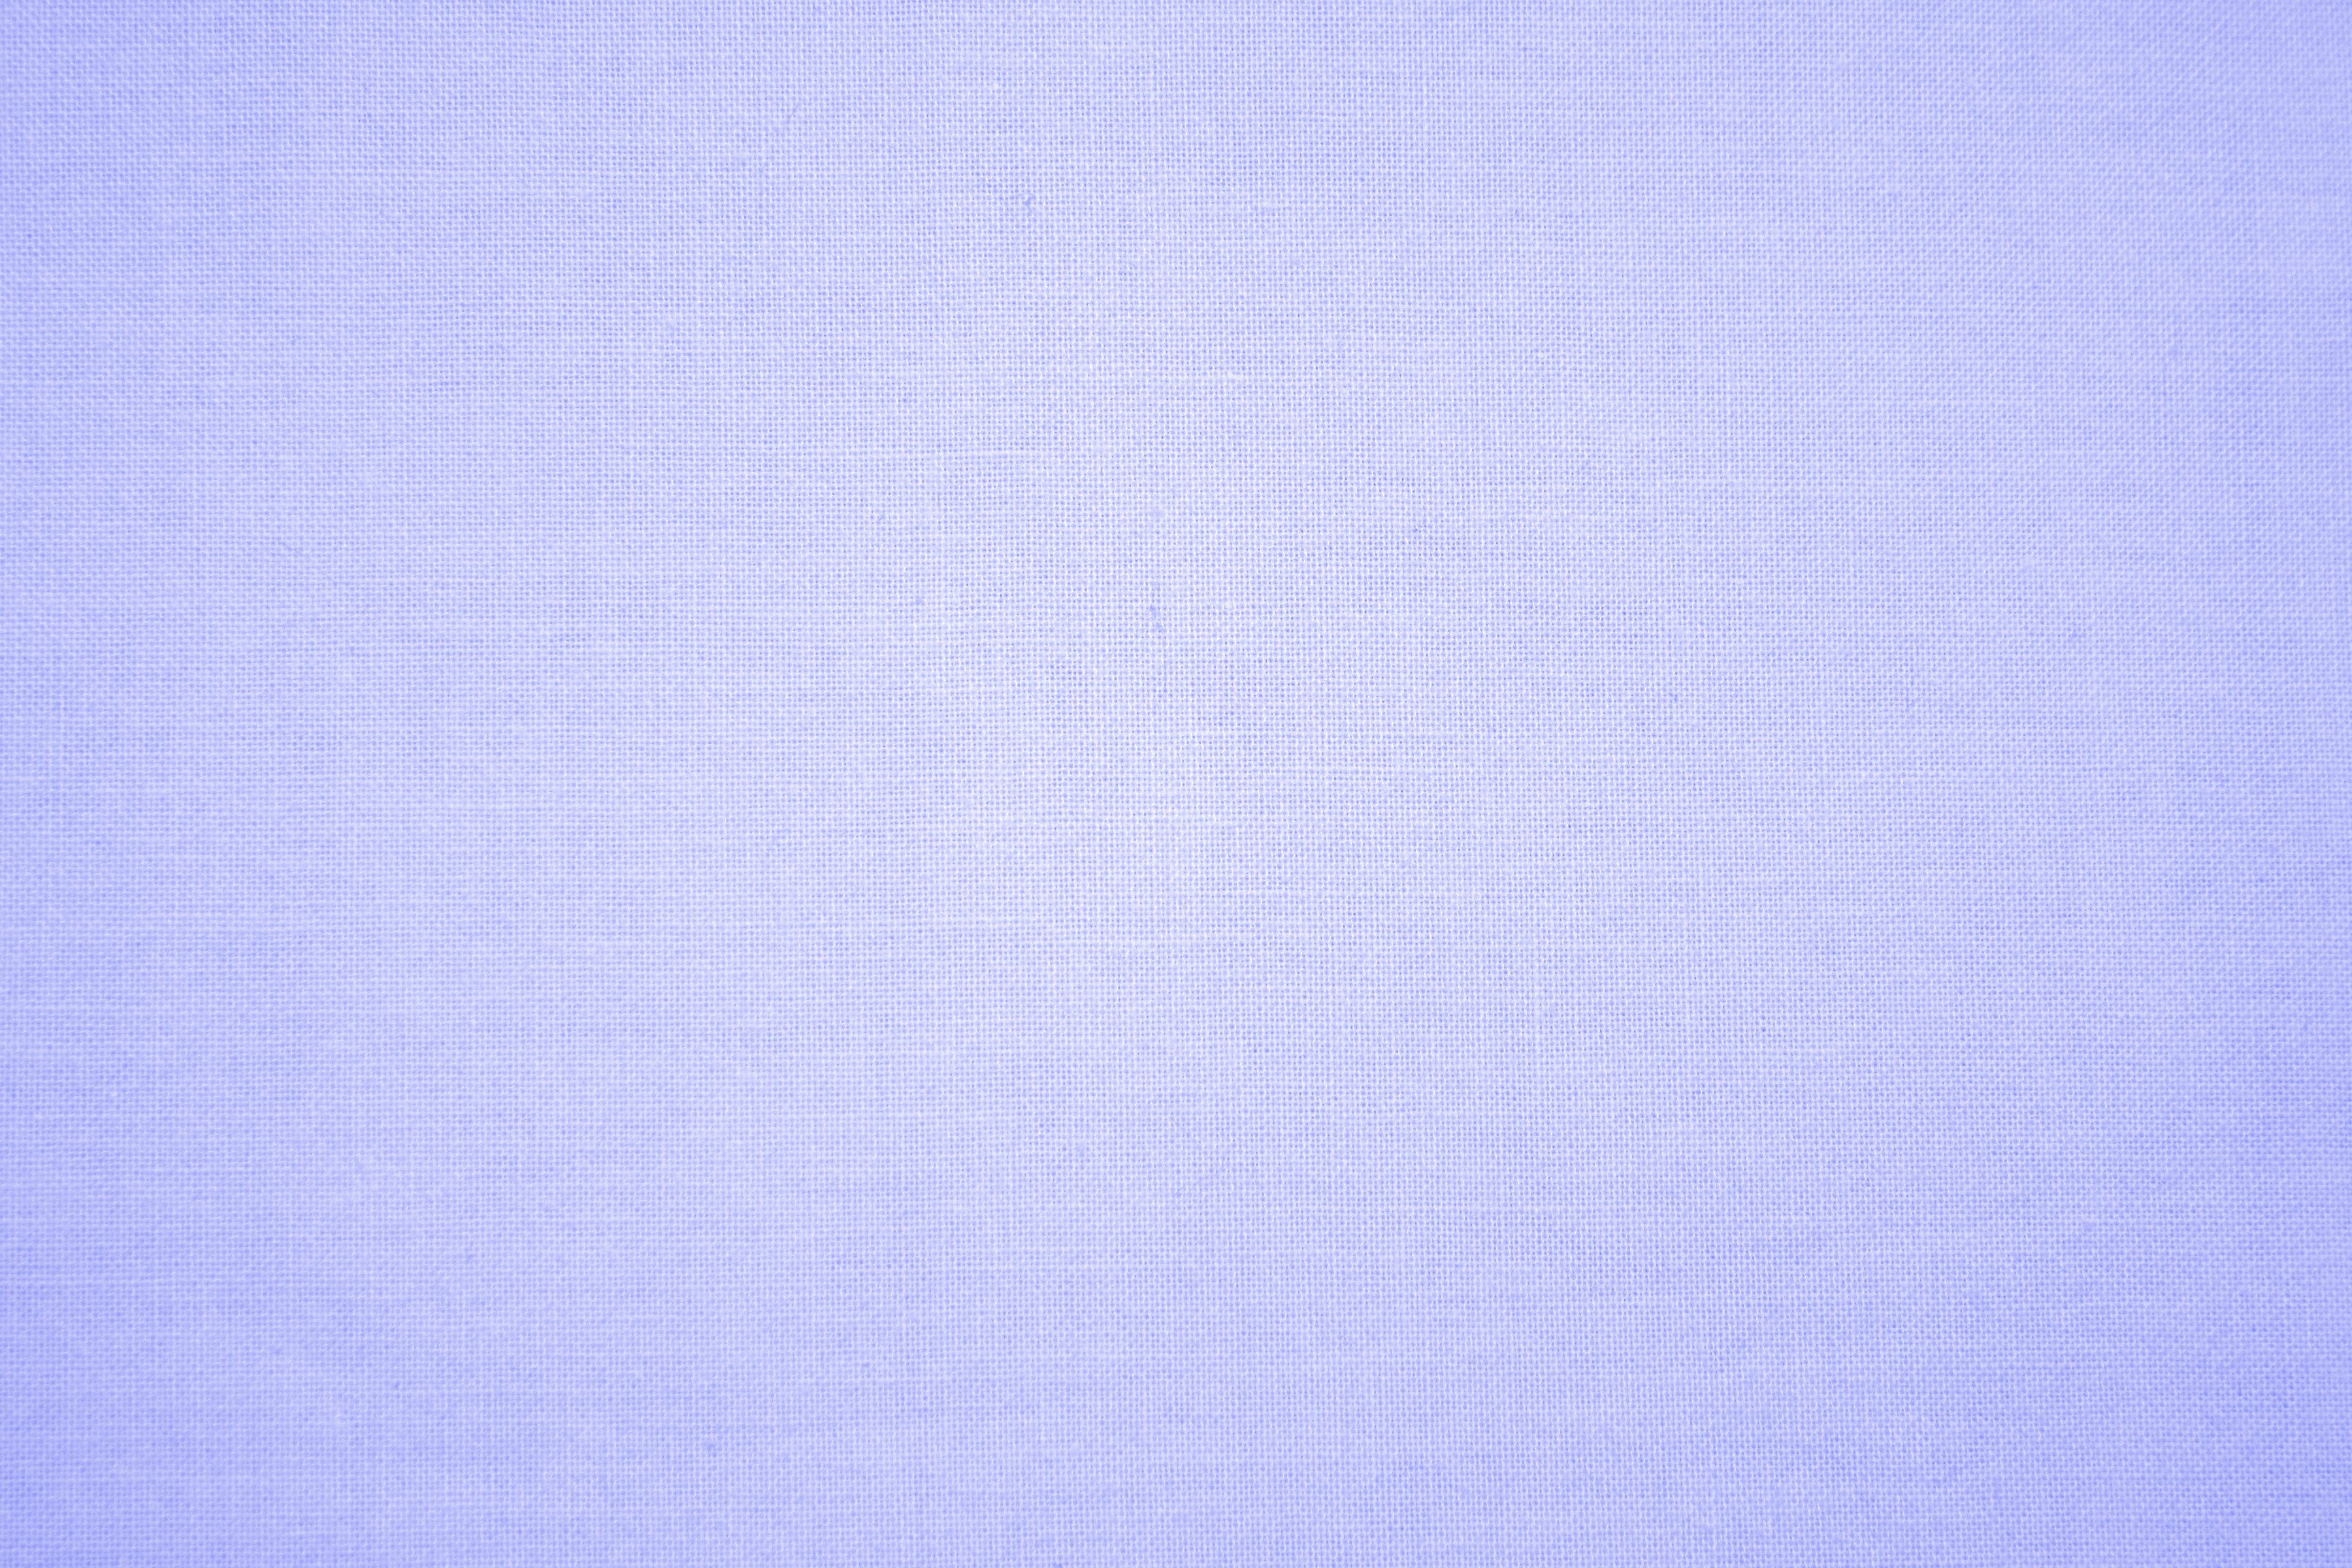 Indigo Blue Canvas Fabric Texture Picture